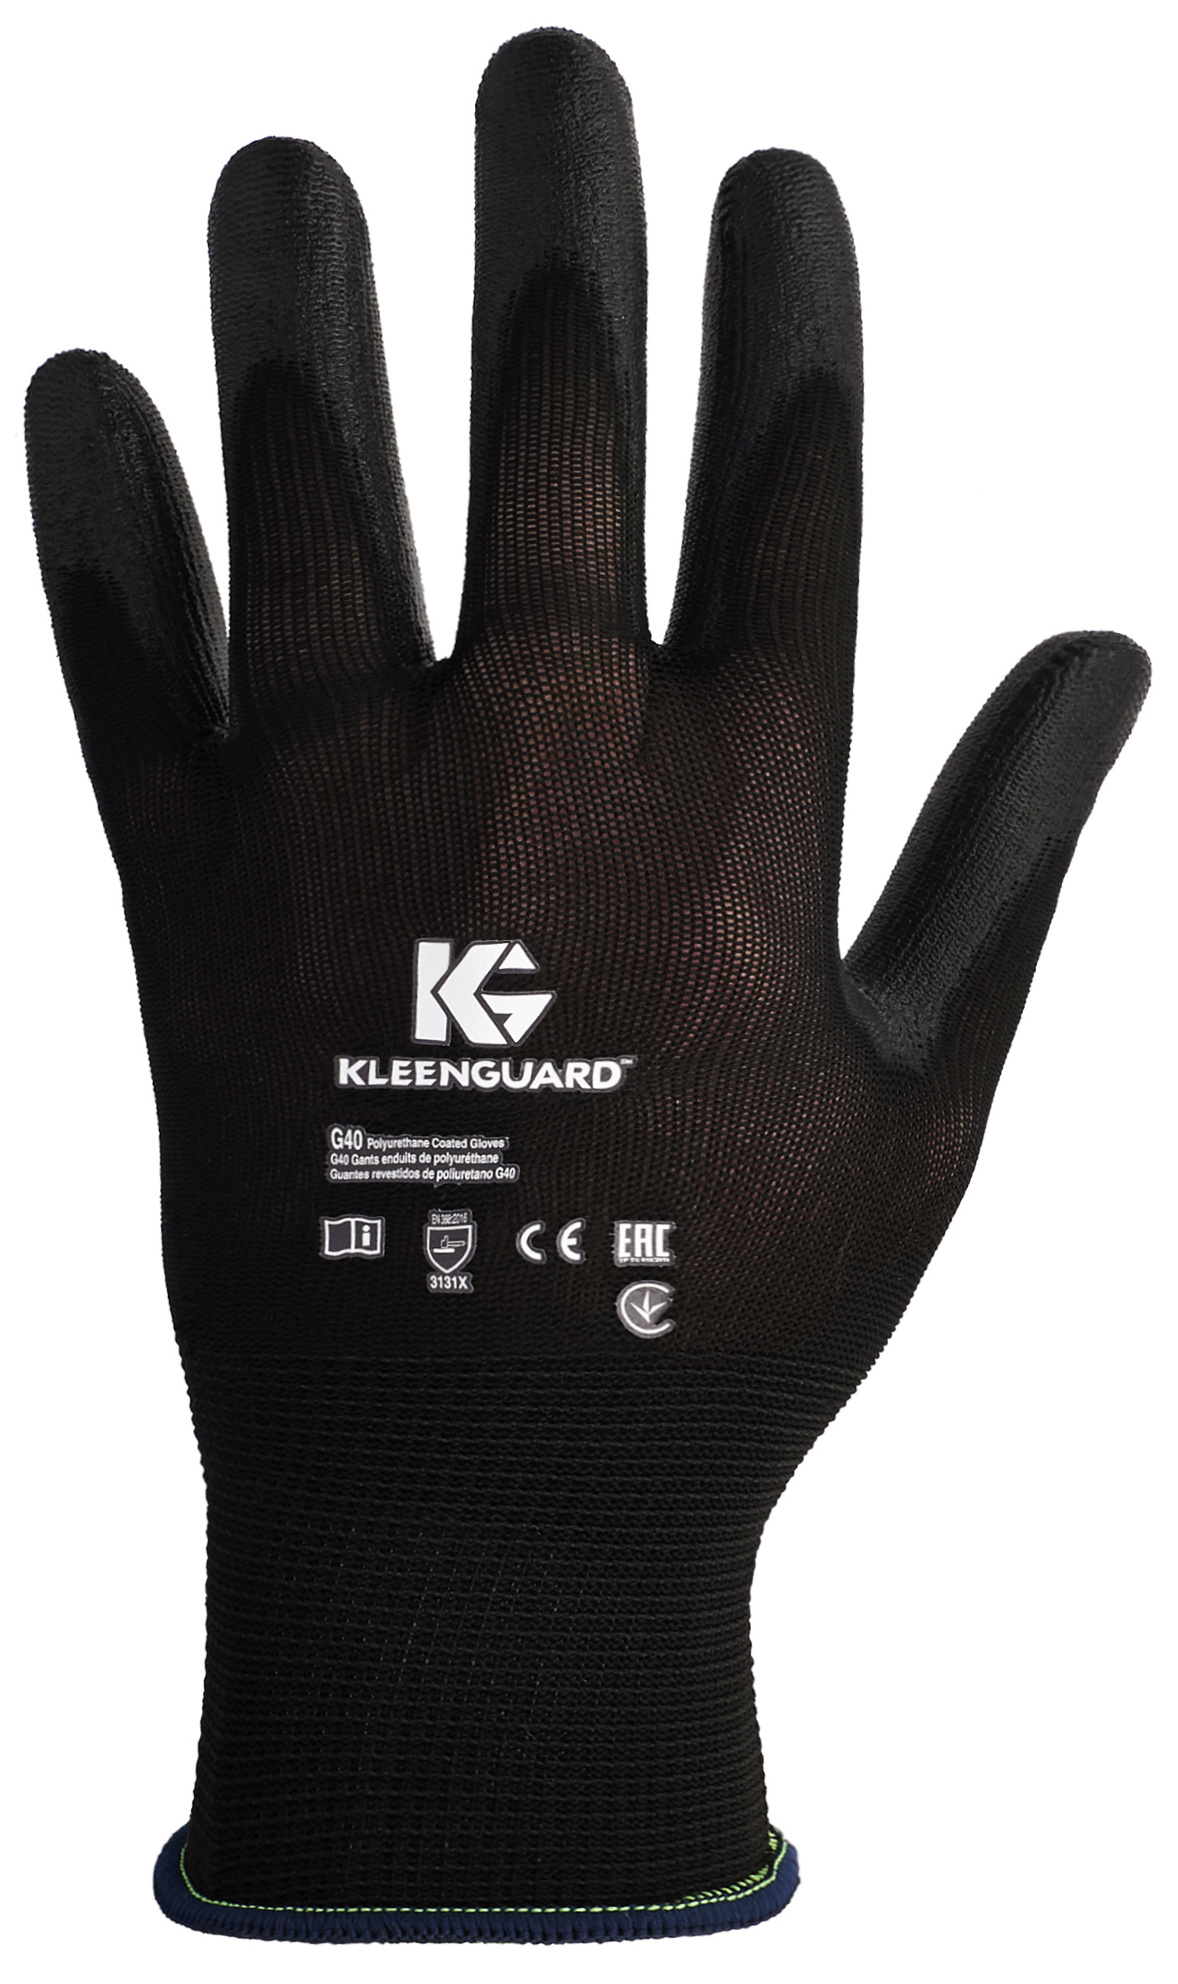 Перчатки KLEENGUARD™ G40 / Полиуретан